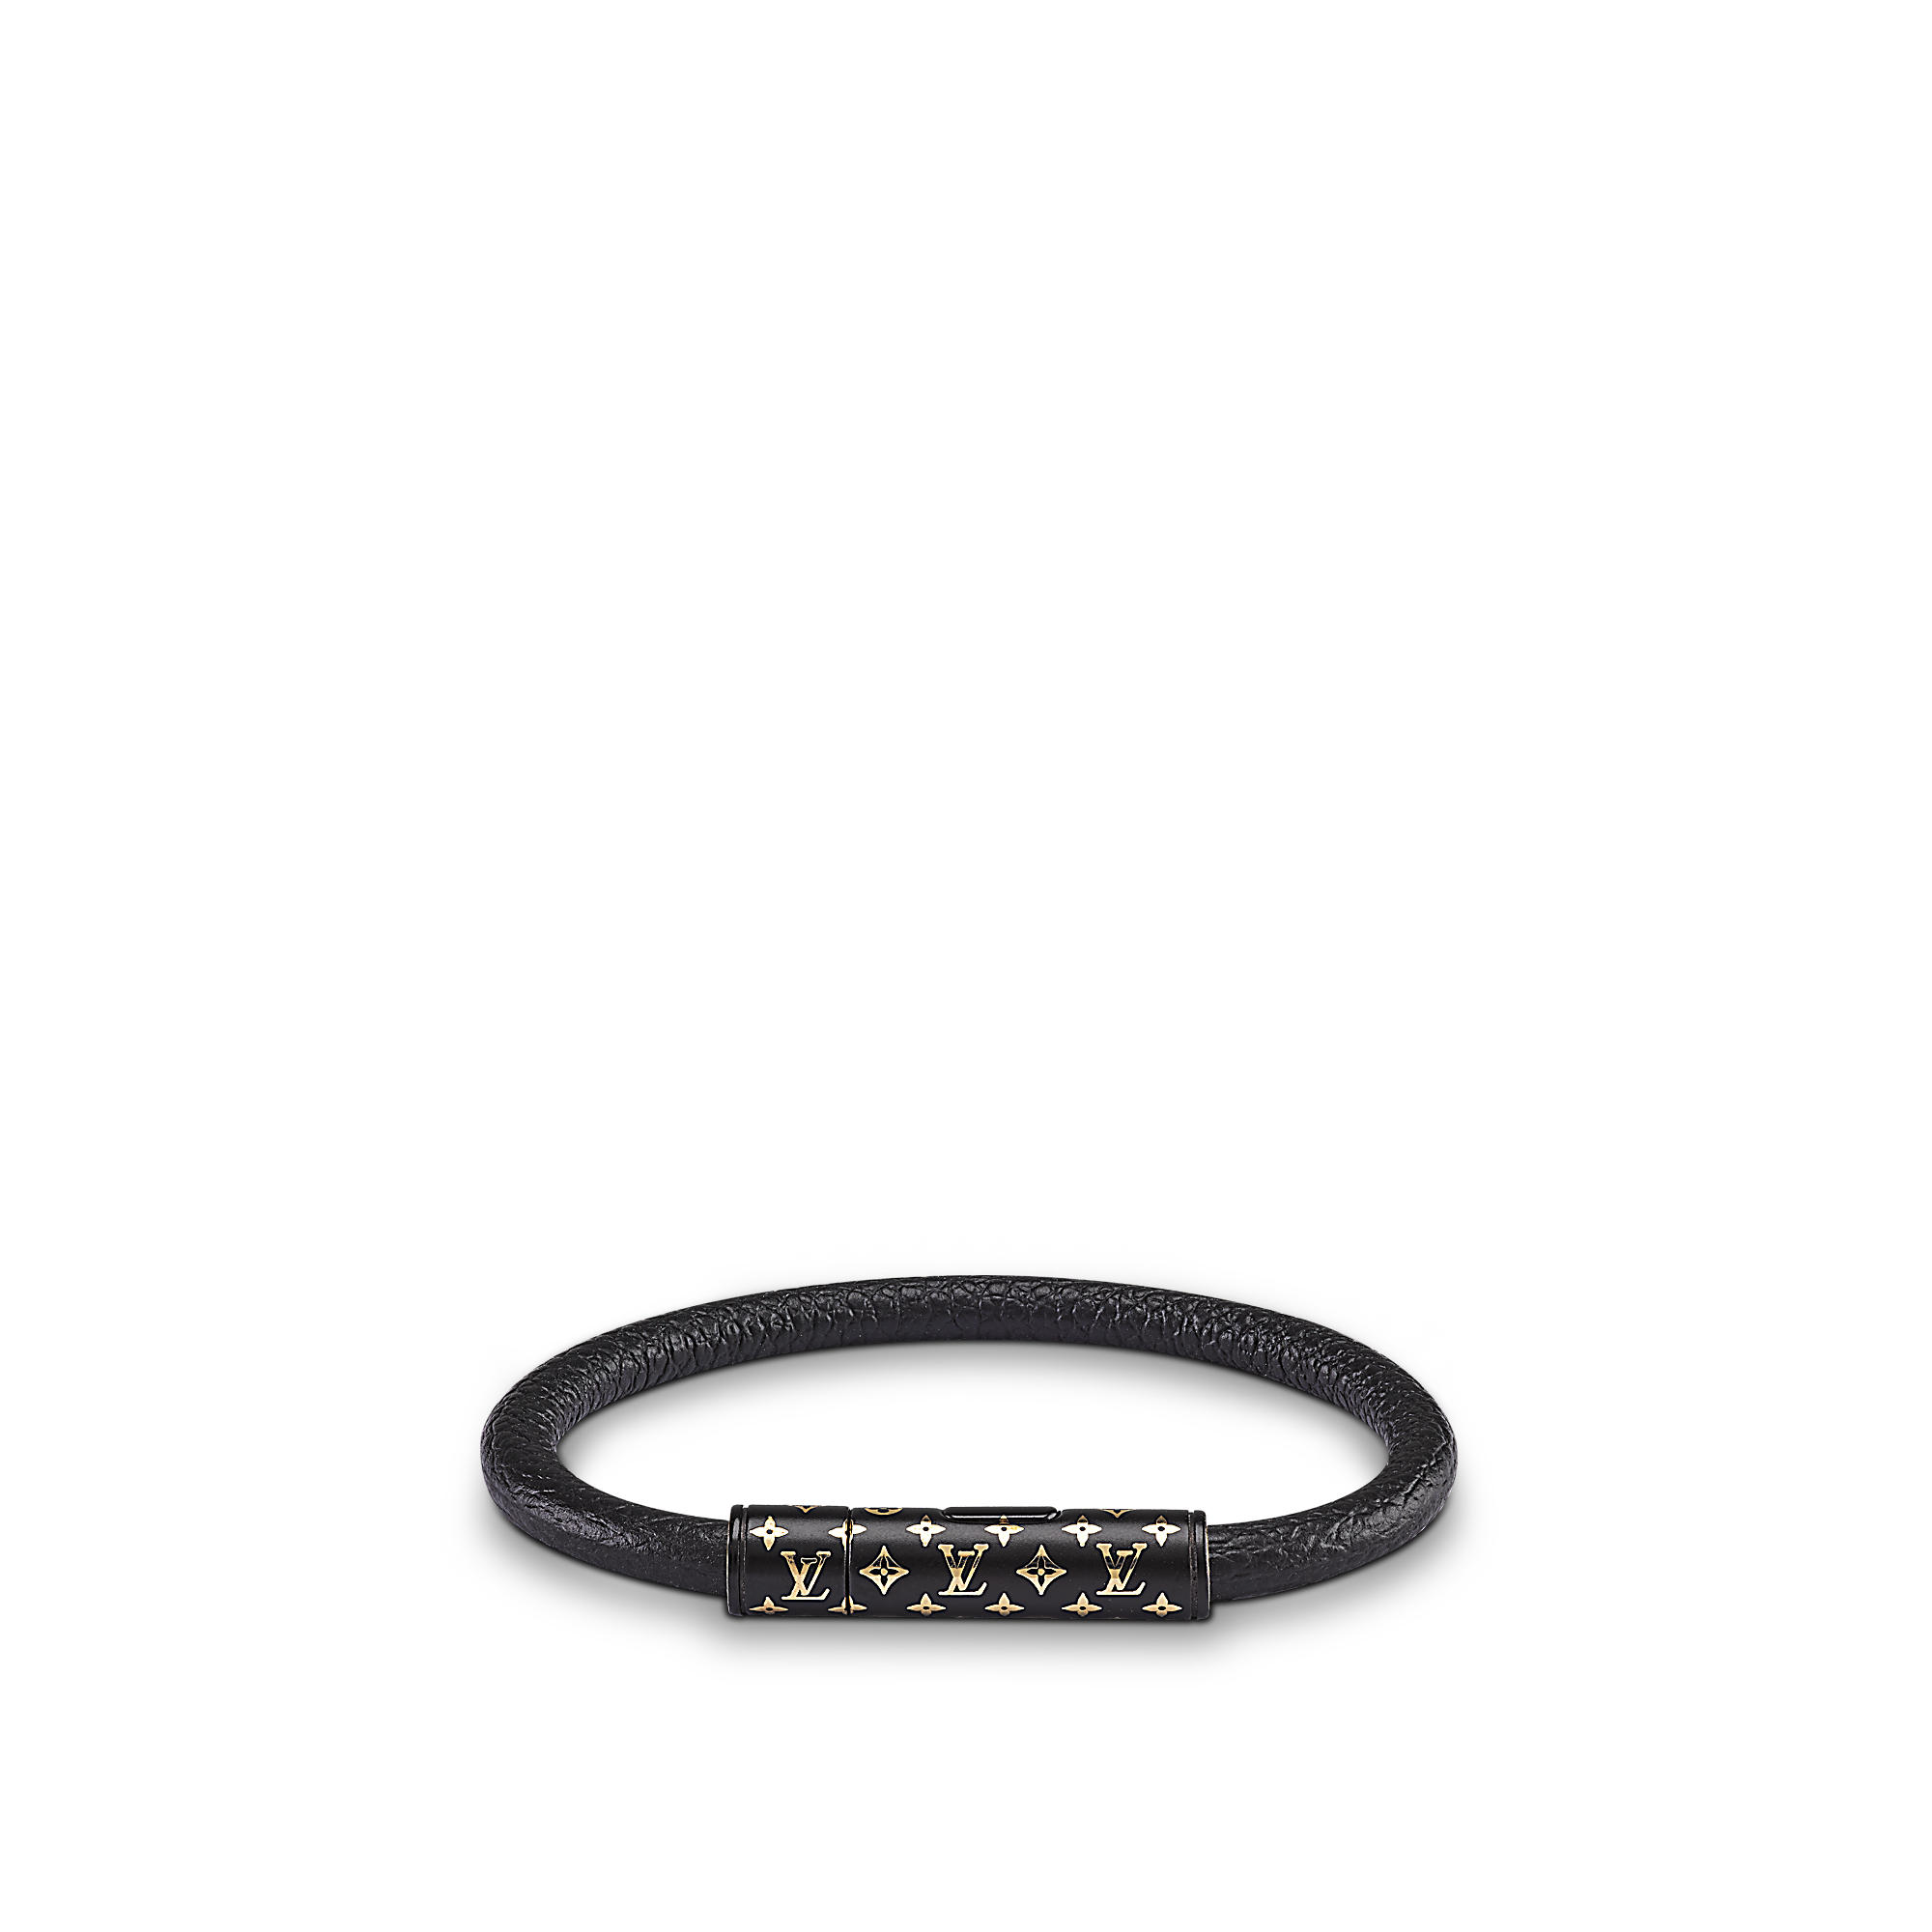 Louis Vuitton Clip It Bracelet Black Leather. Size 21